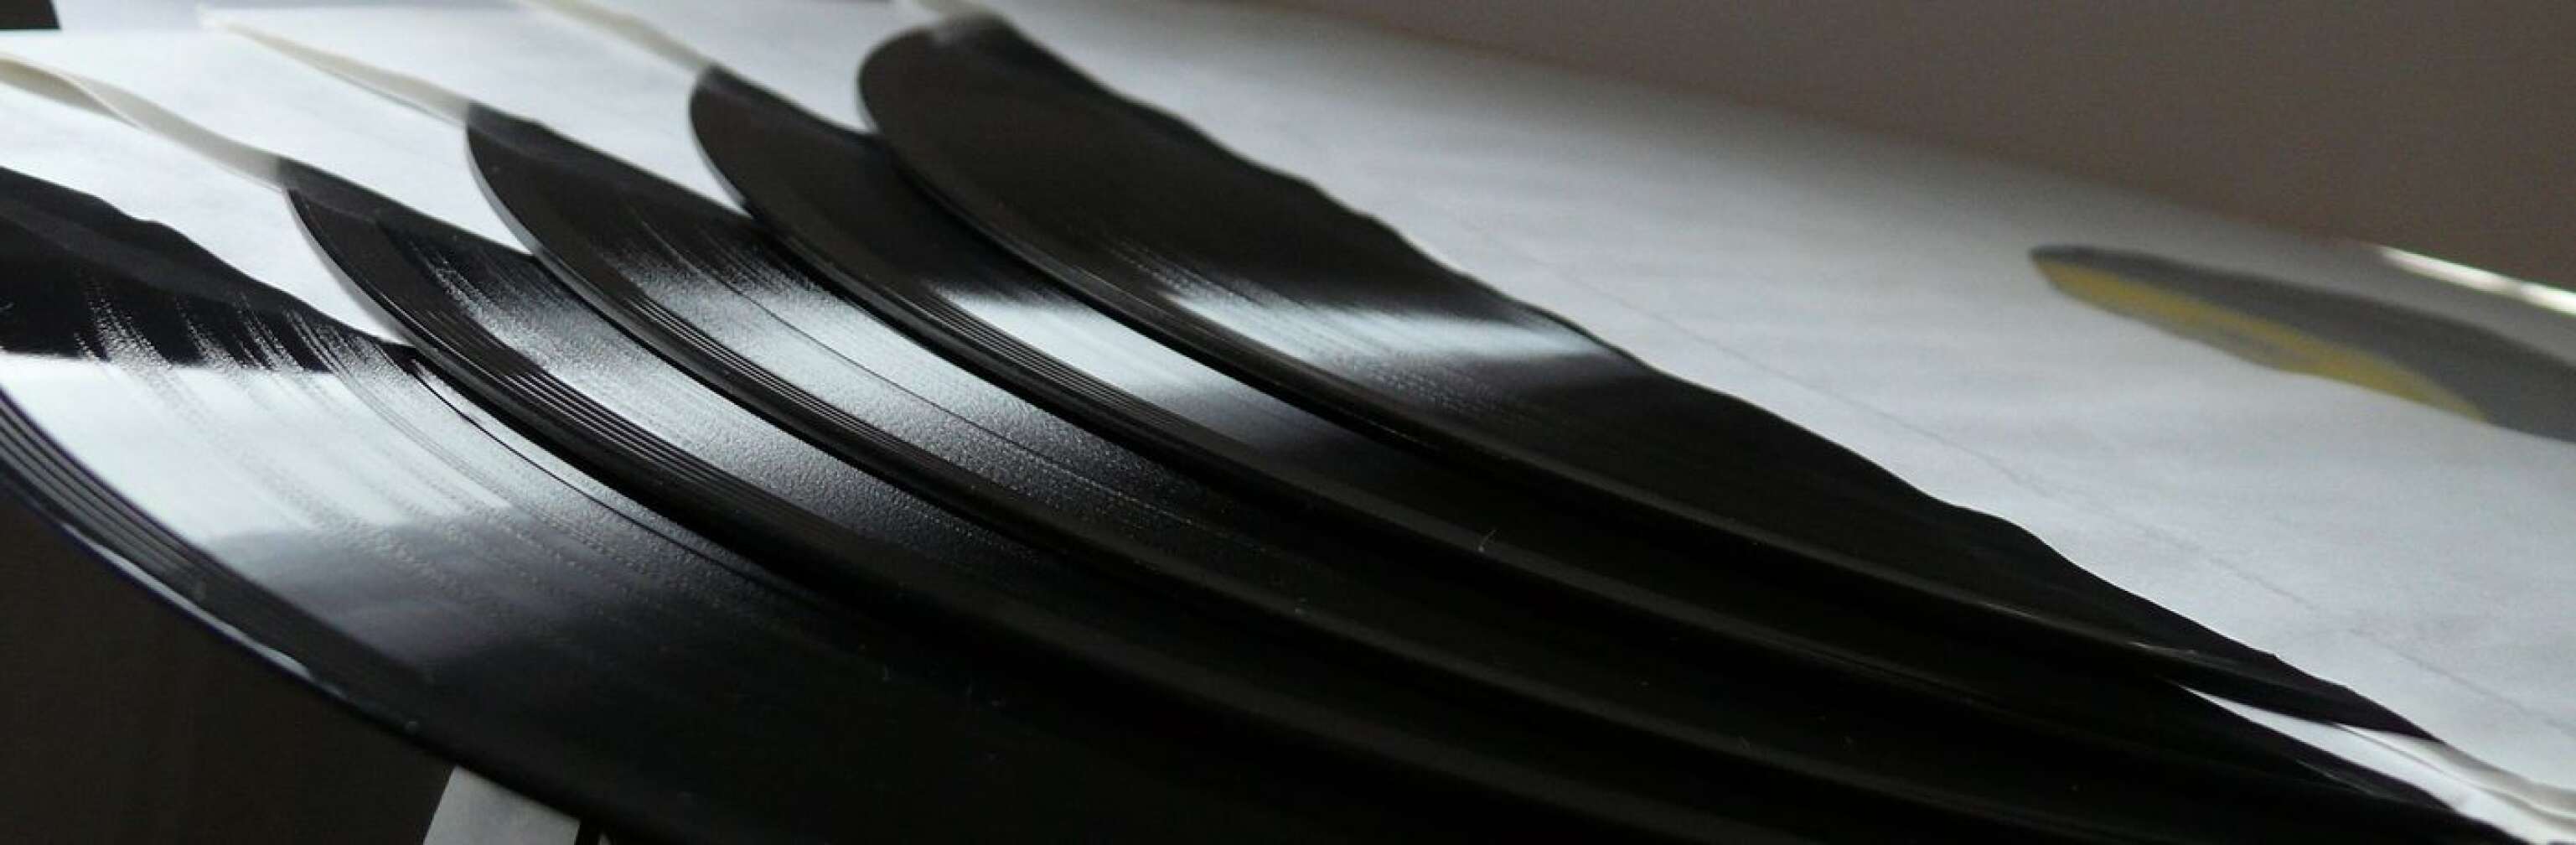 Vinyl black and white